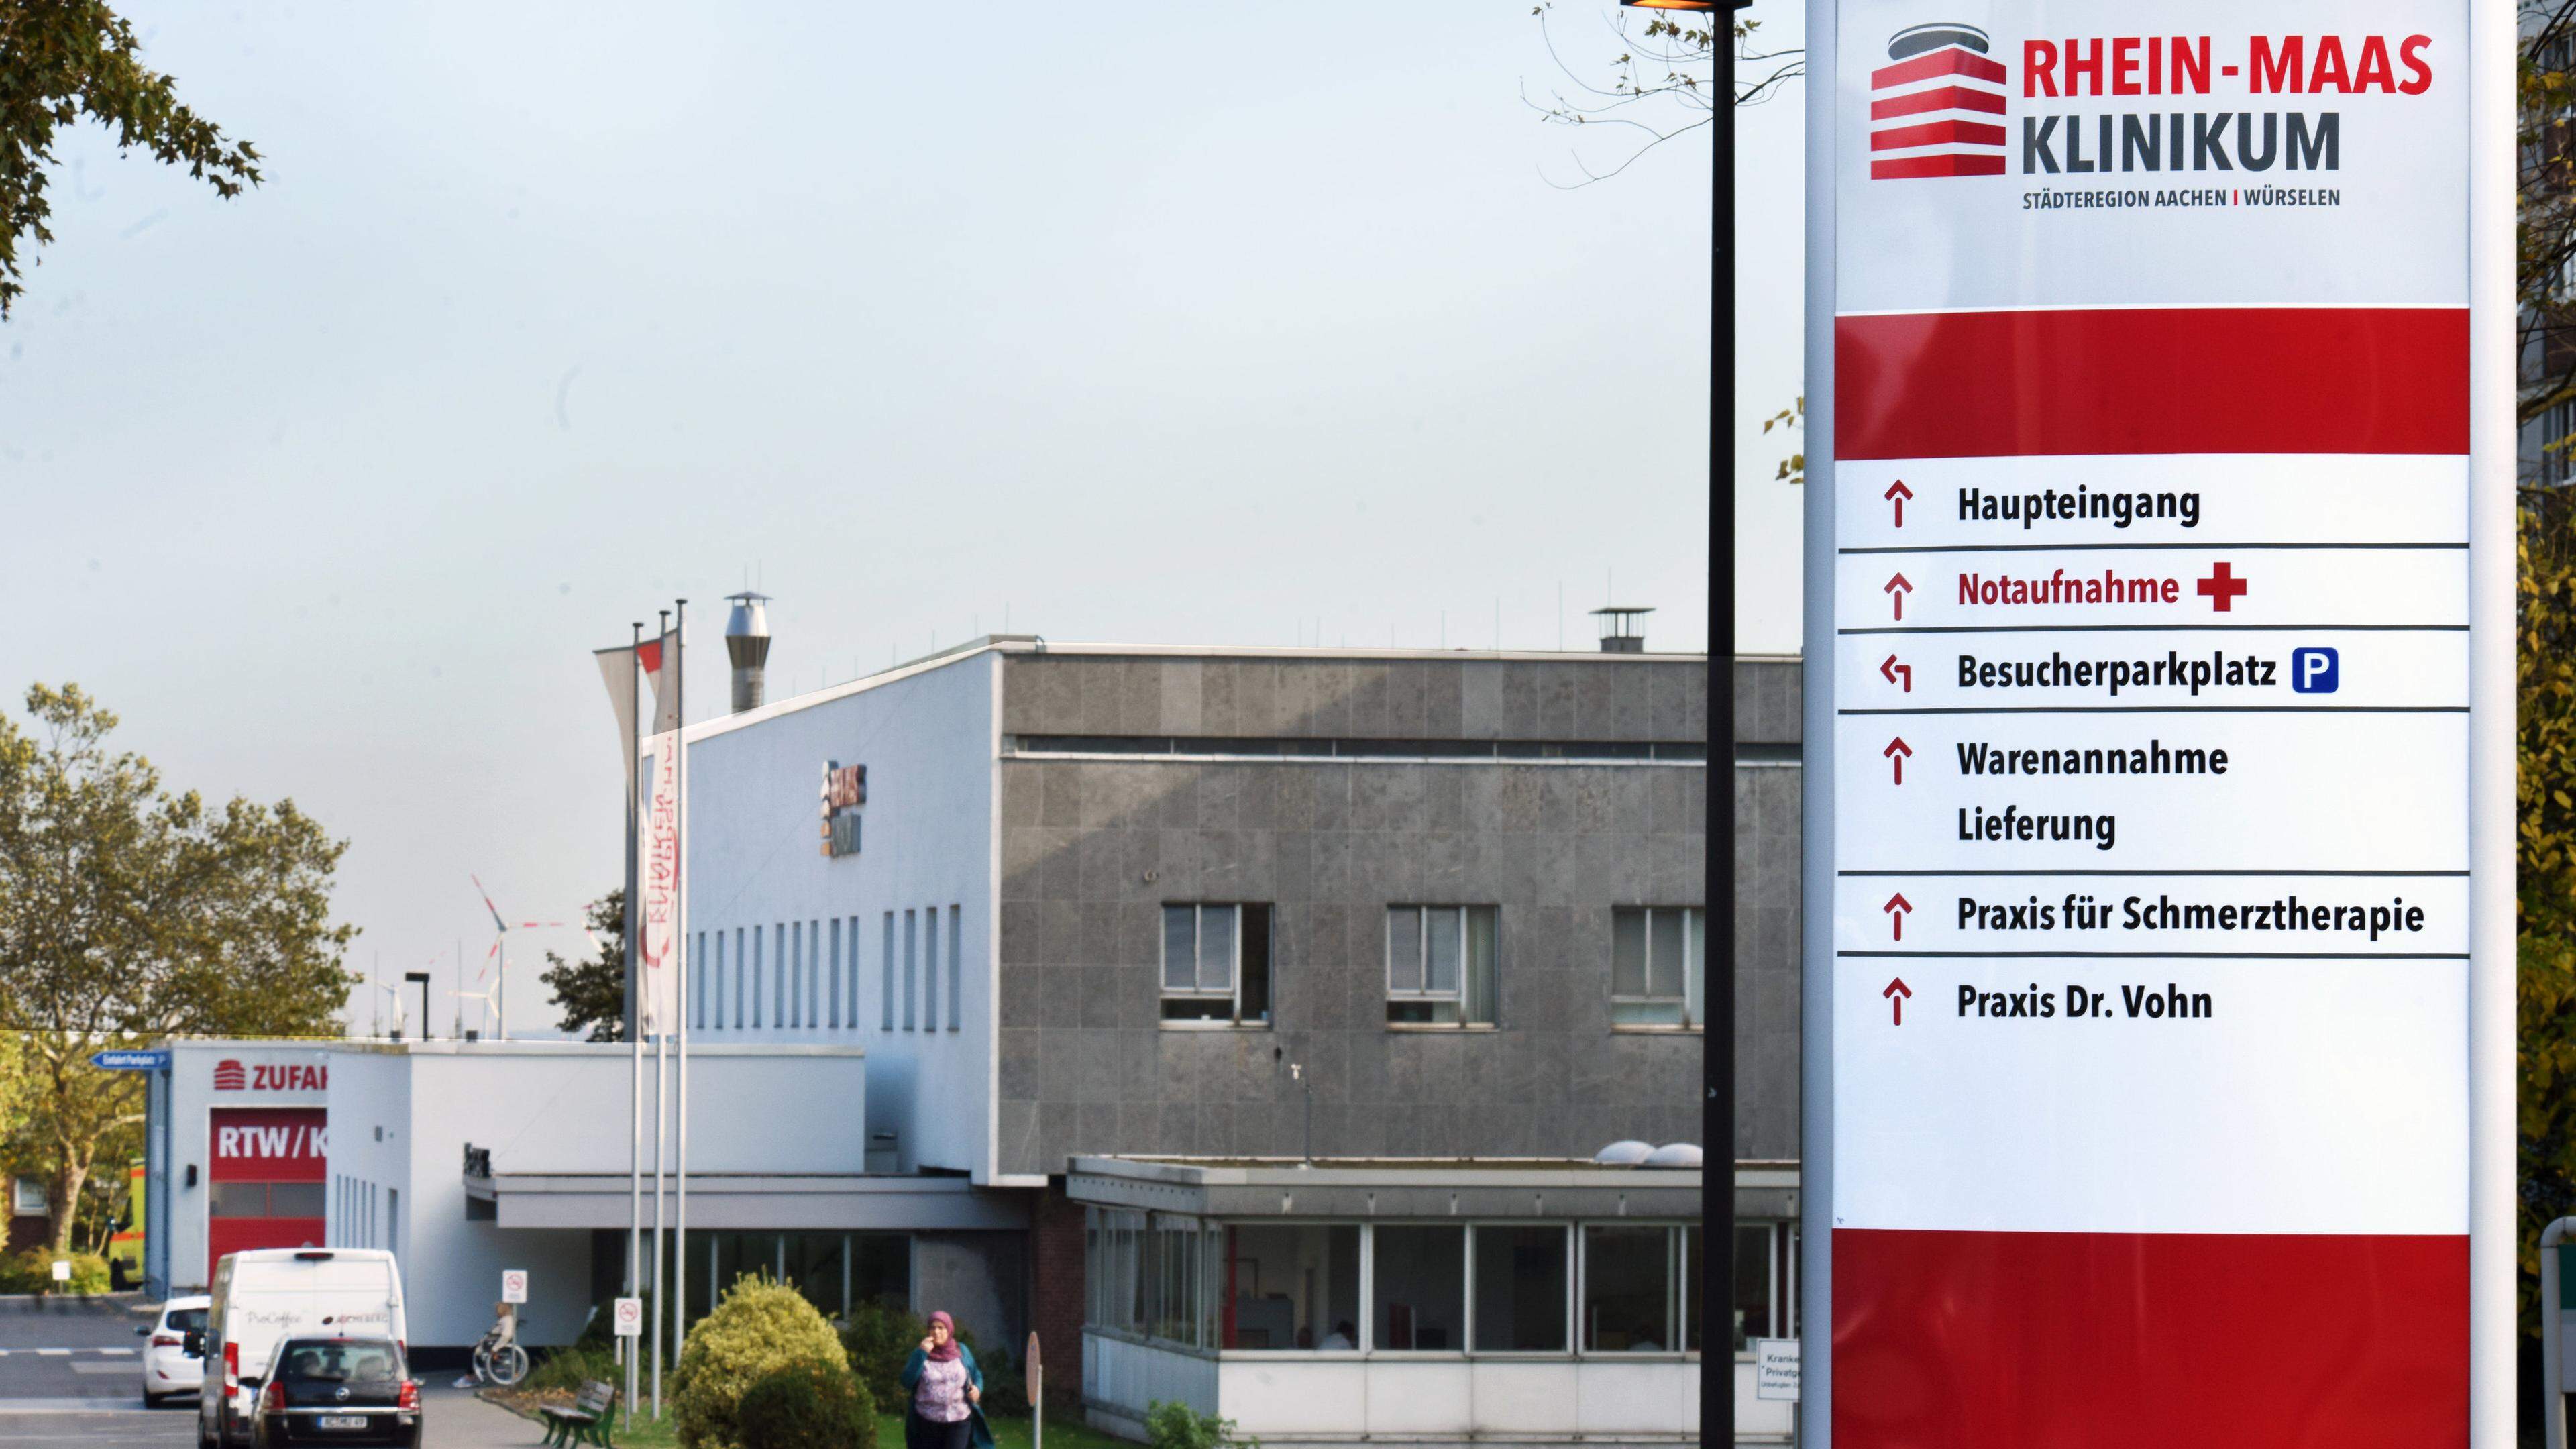 Schreibt rote Zahlen: Im vorigen Jahr hat das Rhein-Maas-Klinikum auf der Würselener Marienhöhe ein Defizit von fast 3,5 Millionen Euro erwirtschaftet. Für 2019 sieht die neue Geschäftsführung die „reelle Chance“ auf ein positives Ergebnis.